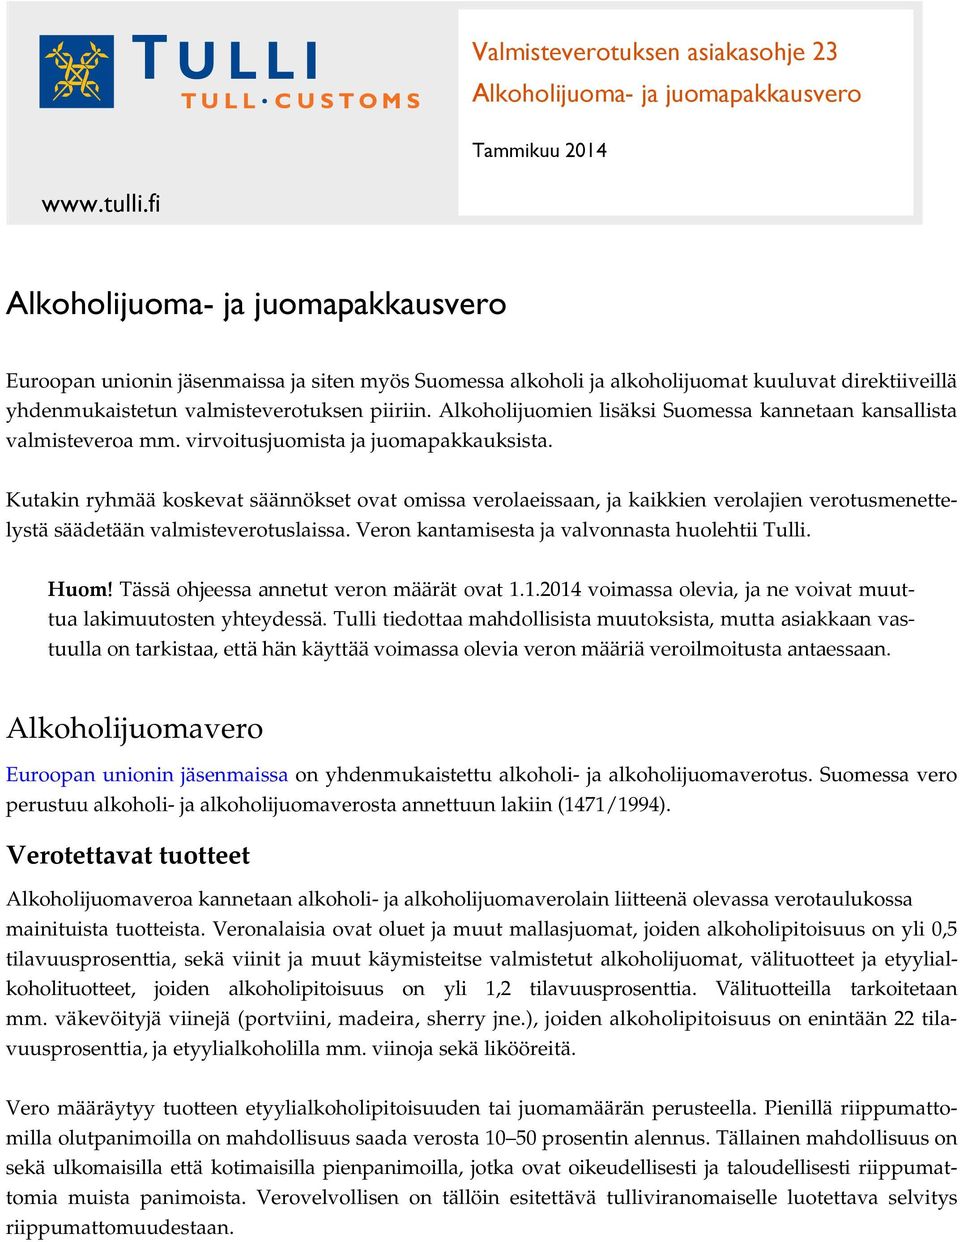 Alkoholijuomien lisäksi Suomessa kannetaan kansallista valmisteveroa mm. virvoitusjuomista ja juomapakkauksista.